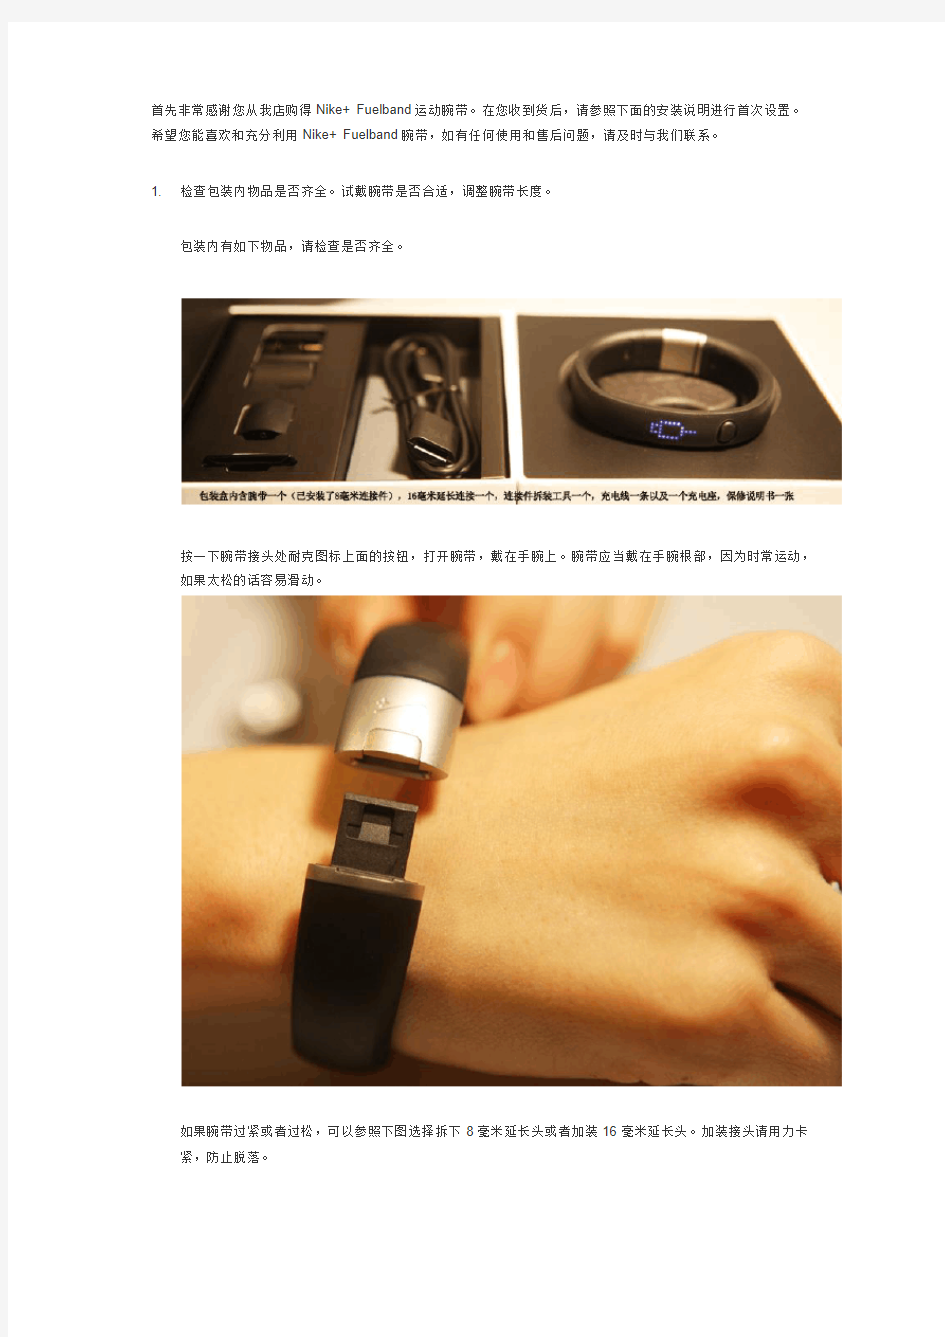 Nike+ Fuelband腕带设置说明